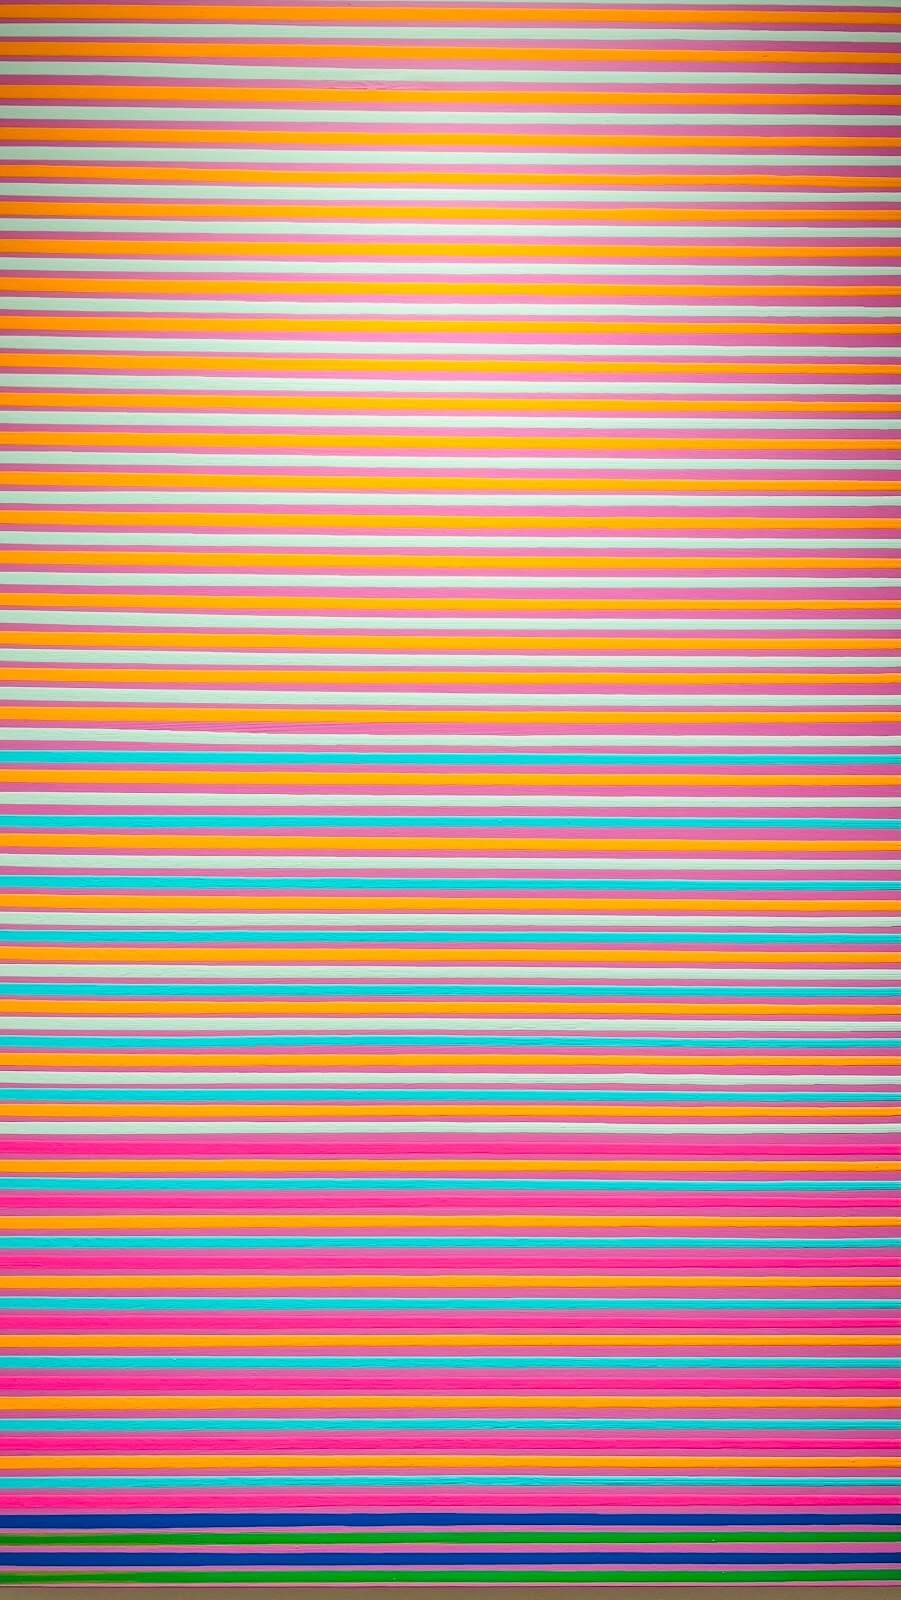 'Beach Stripes' by Roman Rozumnyj